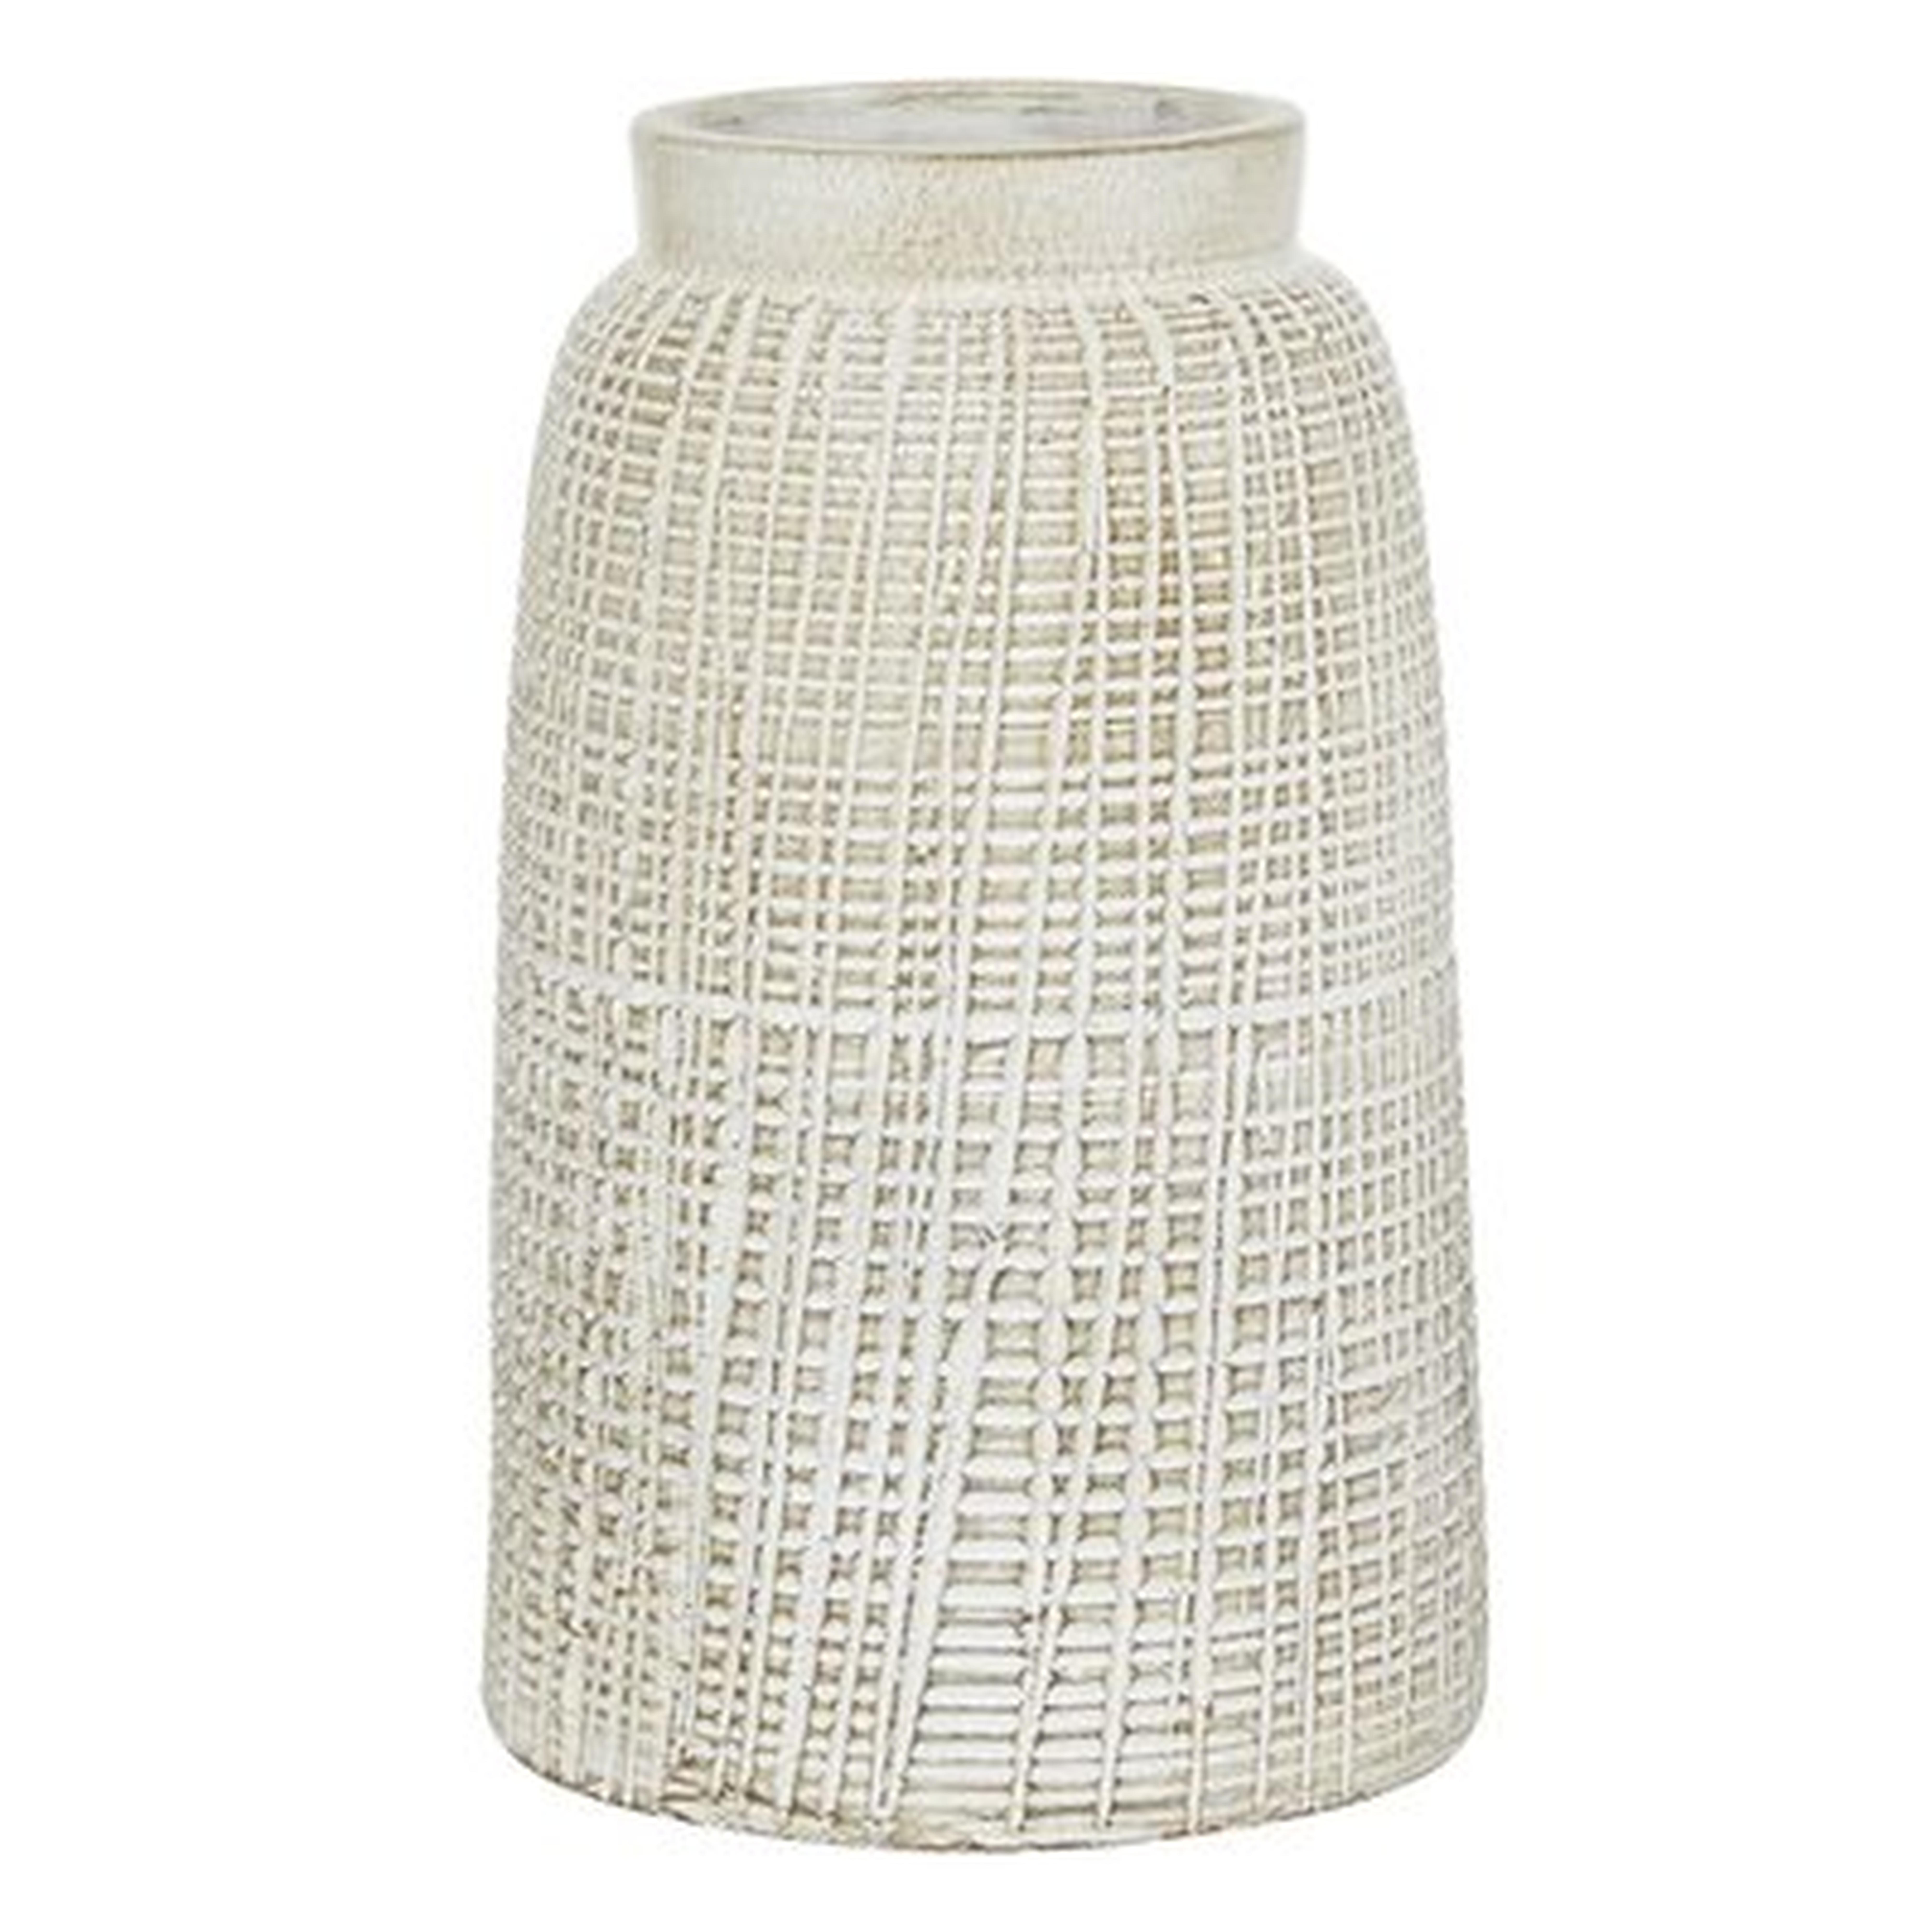 White Terracotta Coastal Style Vase, 11 X 7 X 7 - Wayfair